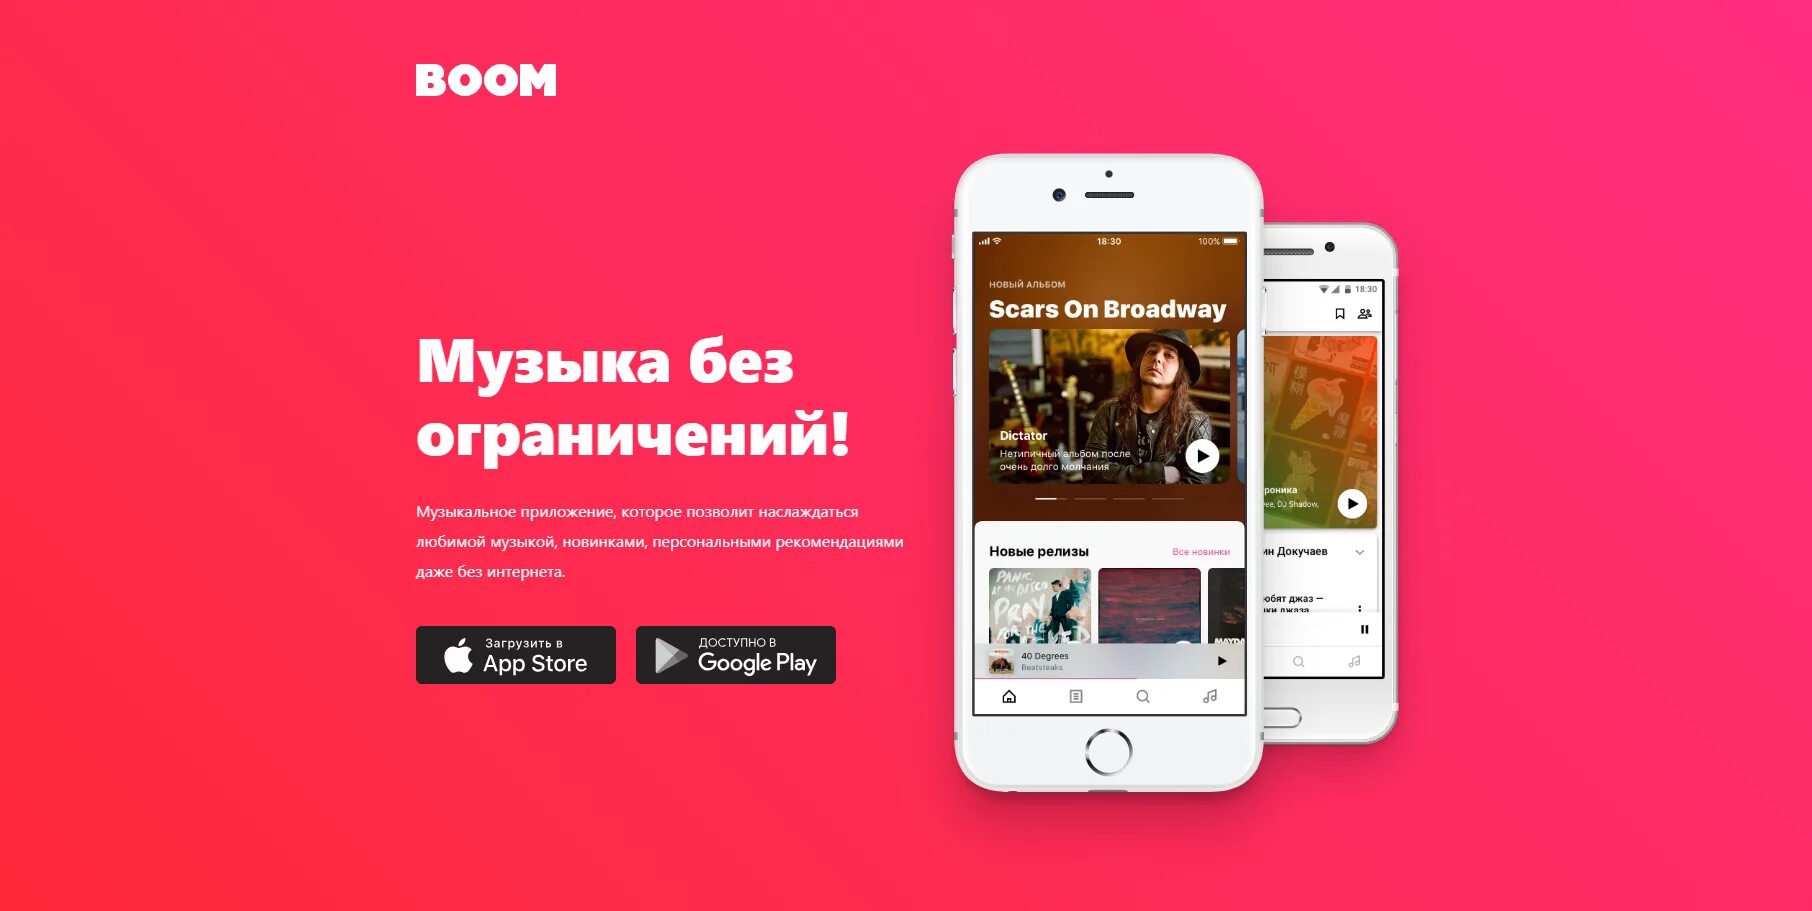 Реклама vk music. Реклама музыкального приложения. ВК музыка реклама. Boom ВК. Реклама приложения для музыки.